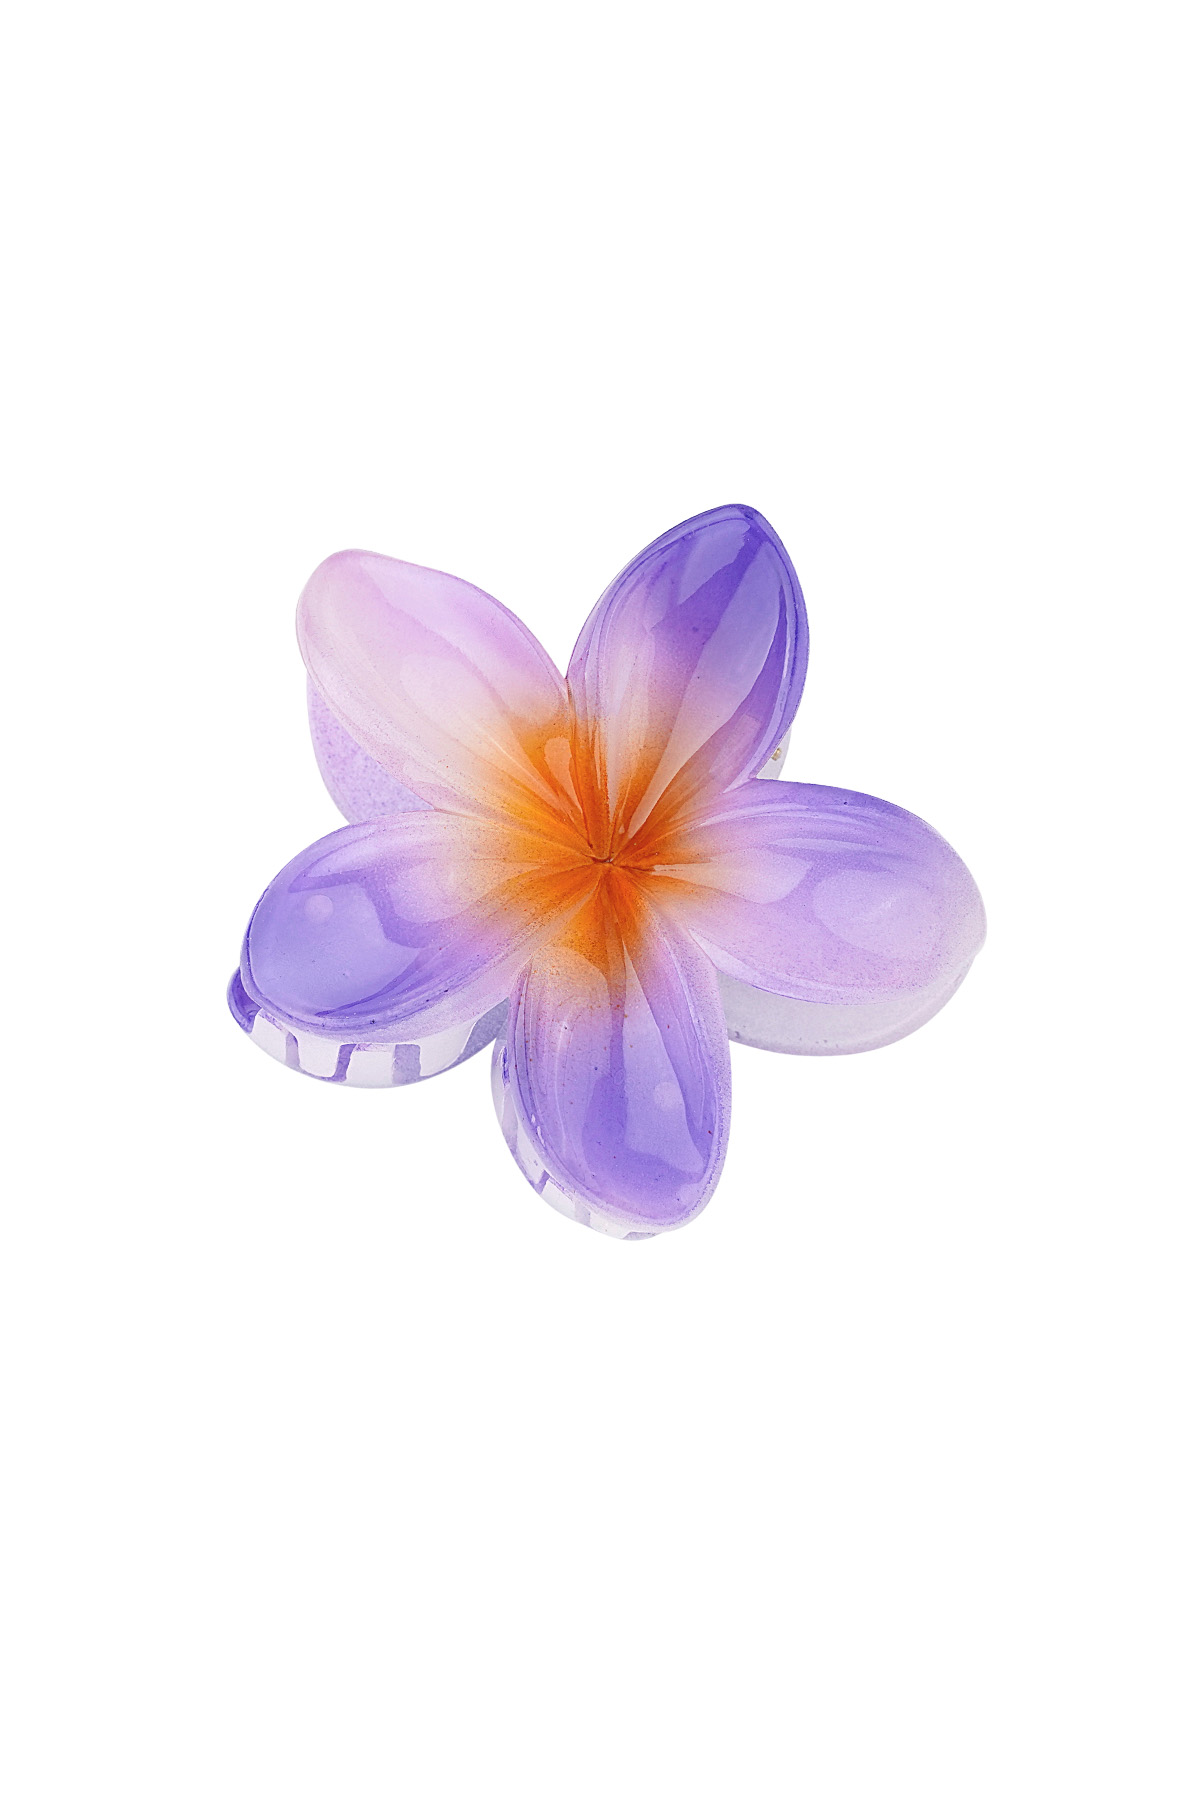 Saç tokası Hawaii çiçeği - mor h5 